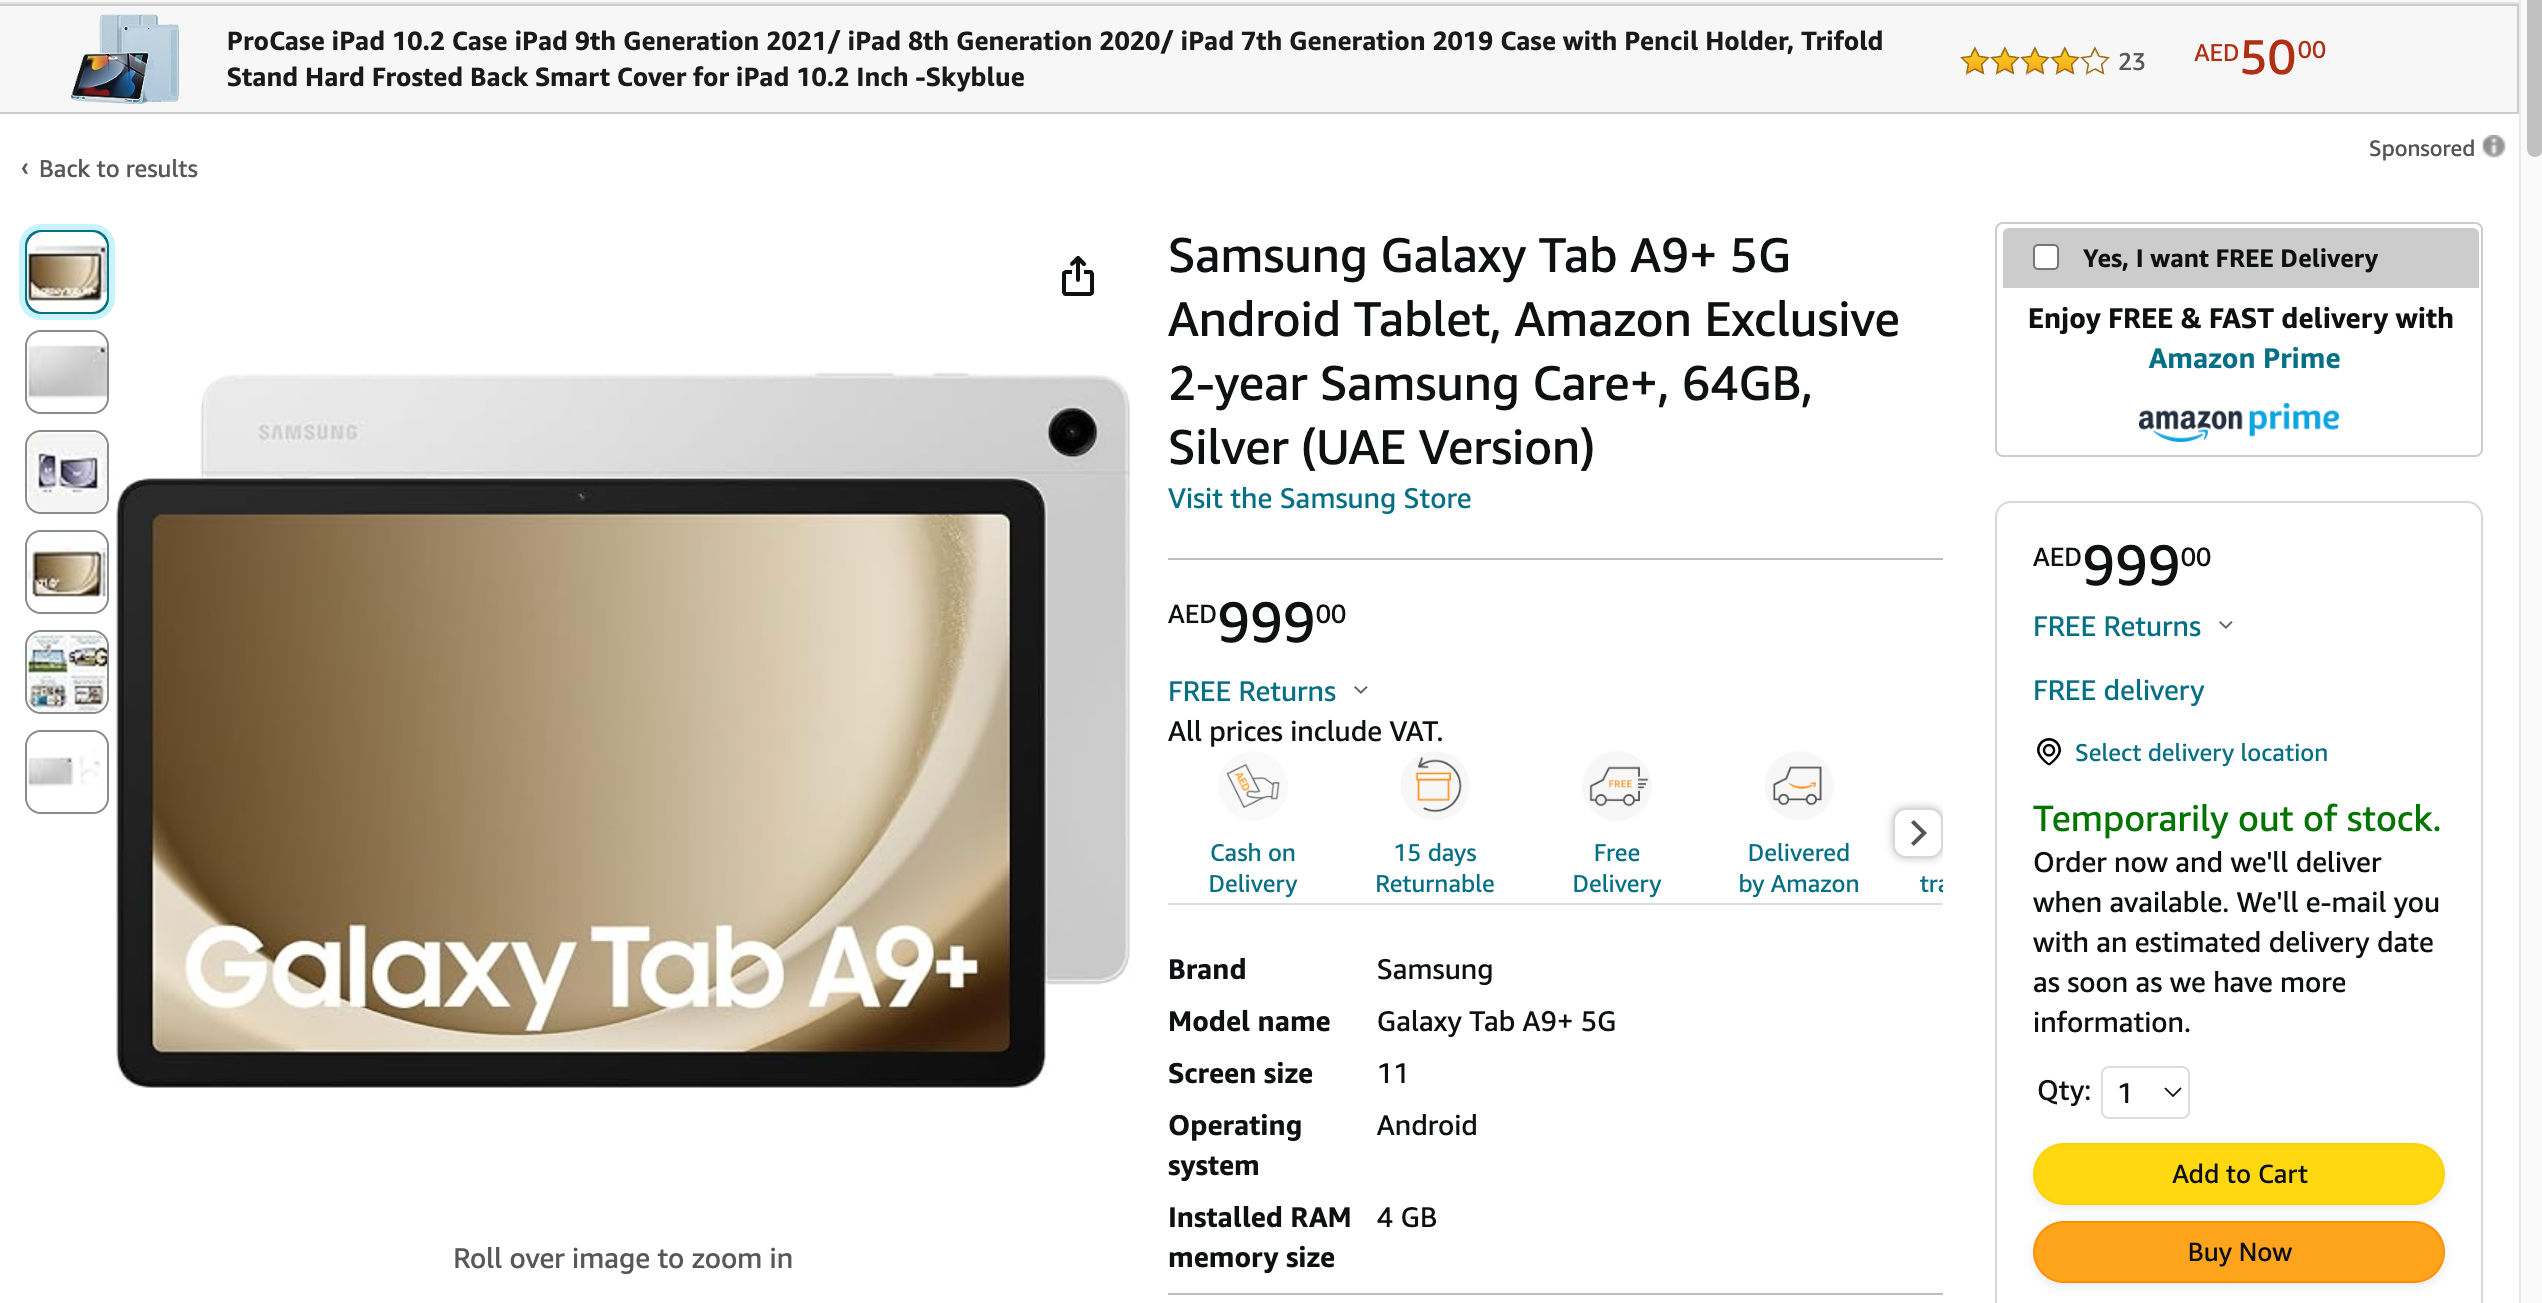 Samsung Galaxy Tab A9 with single rear camera leaks ahead of